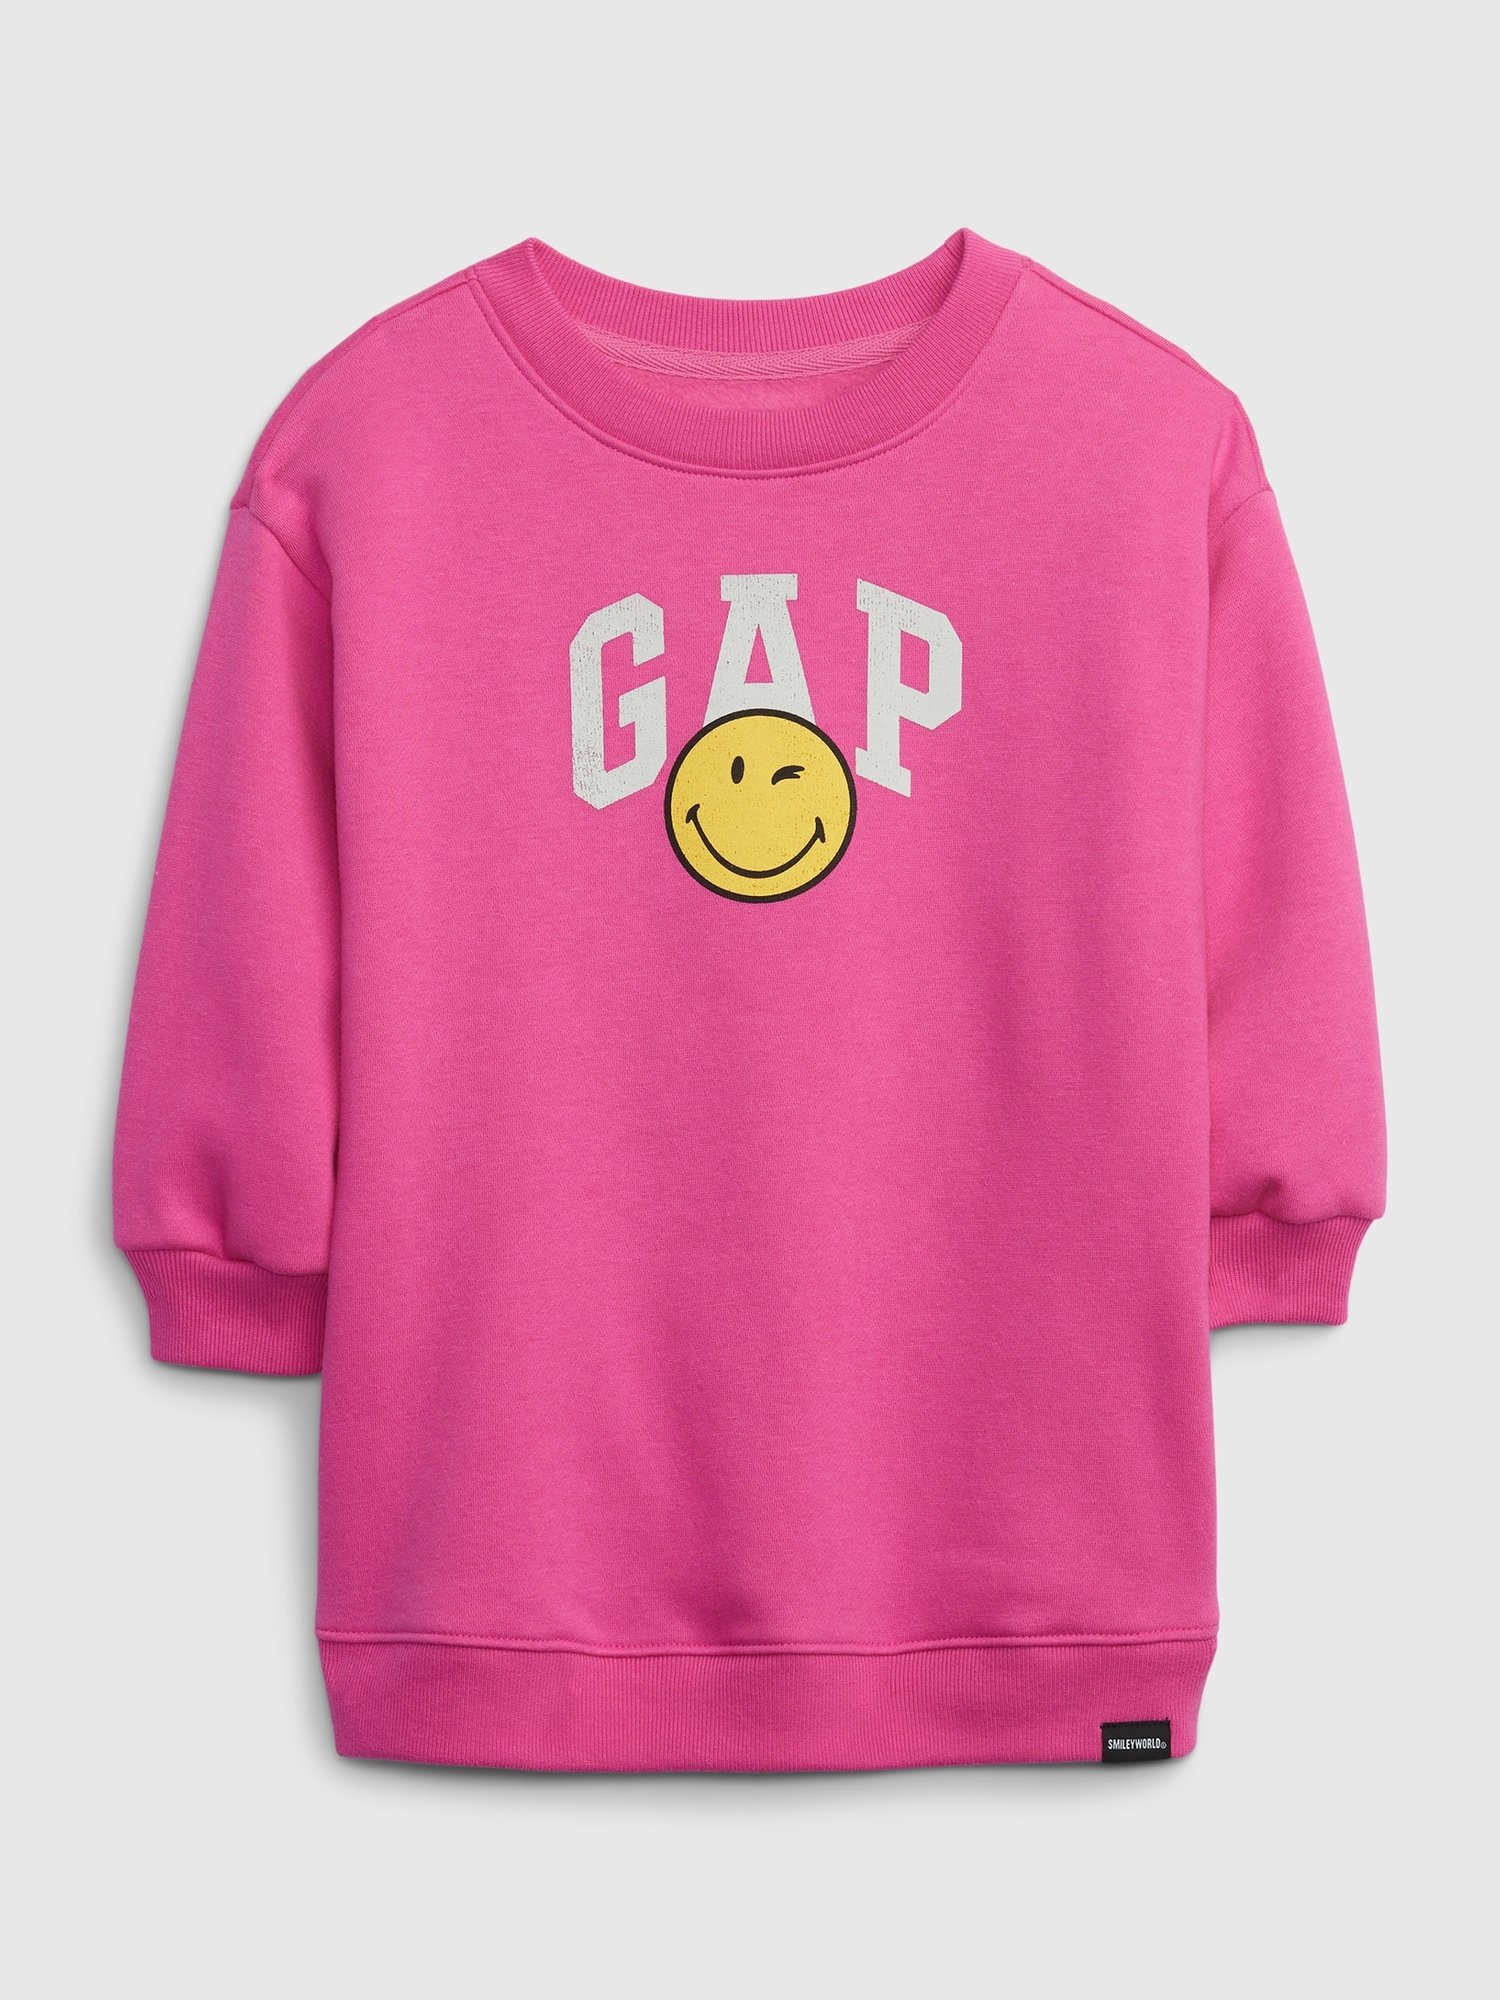 Gap x Smiley® Toddler Sweatshirt Dress P2150.jpg